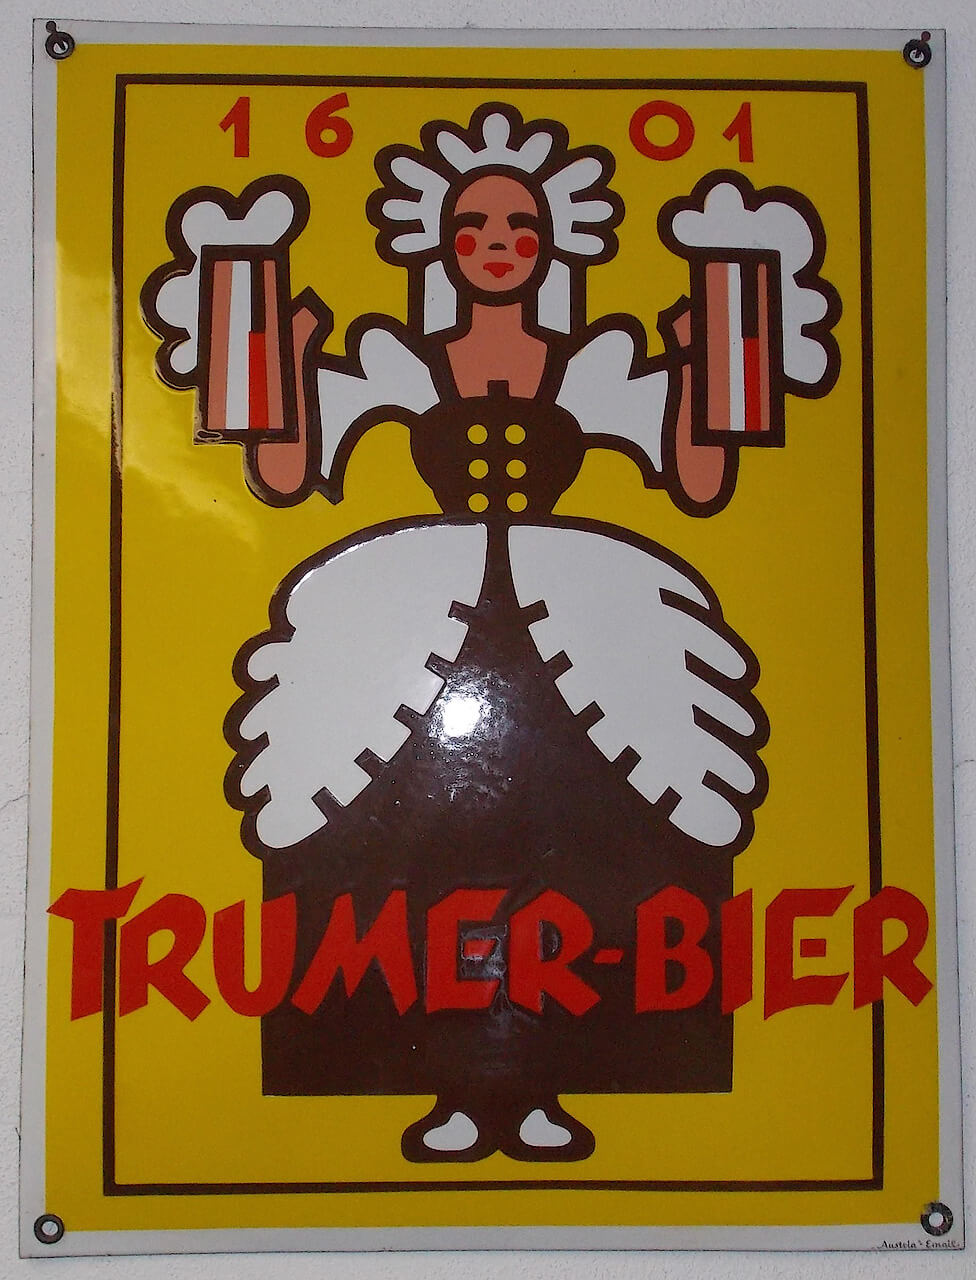 Trumer-Bier